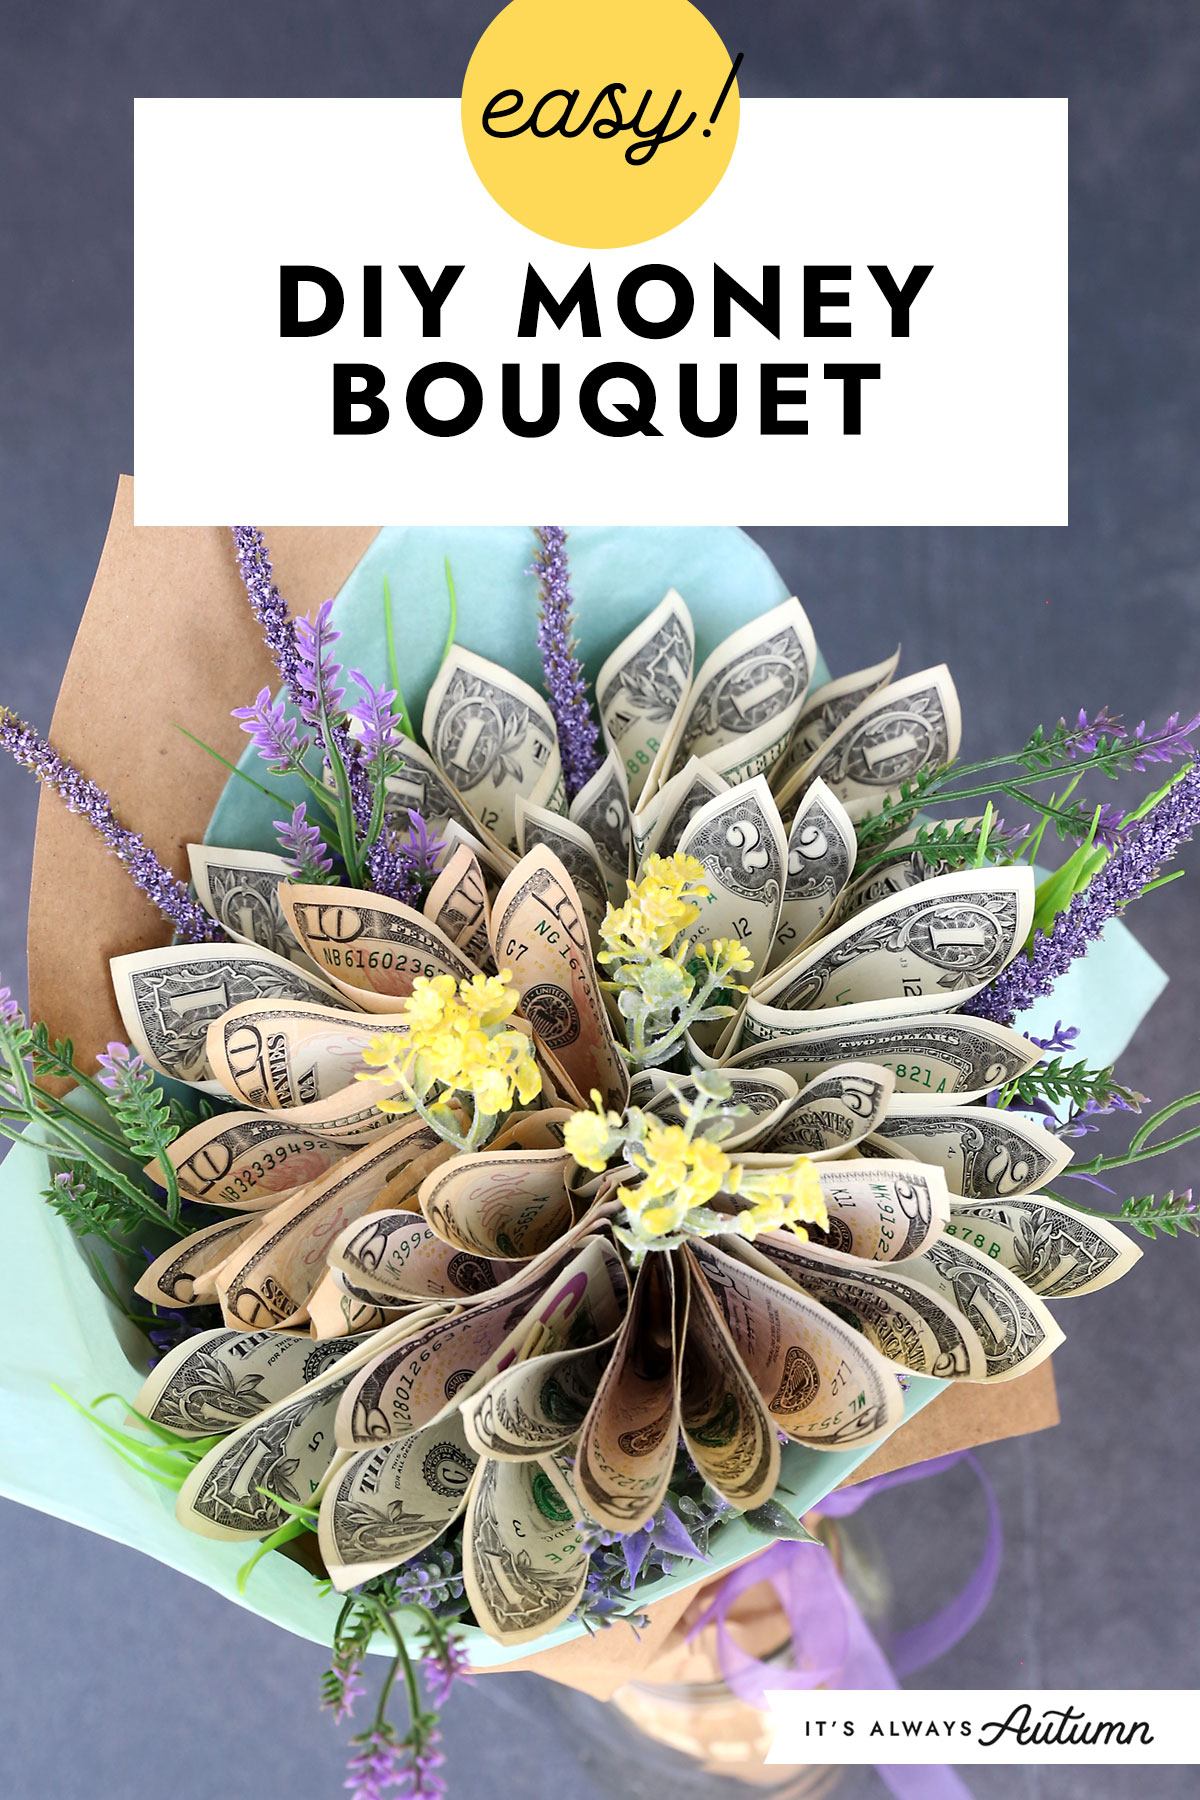 cash money flower bouquet - Buy cash money flower bouquet at Best